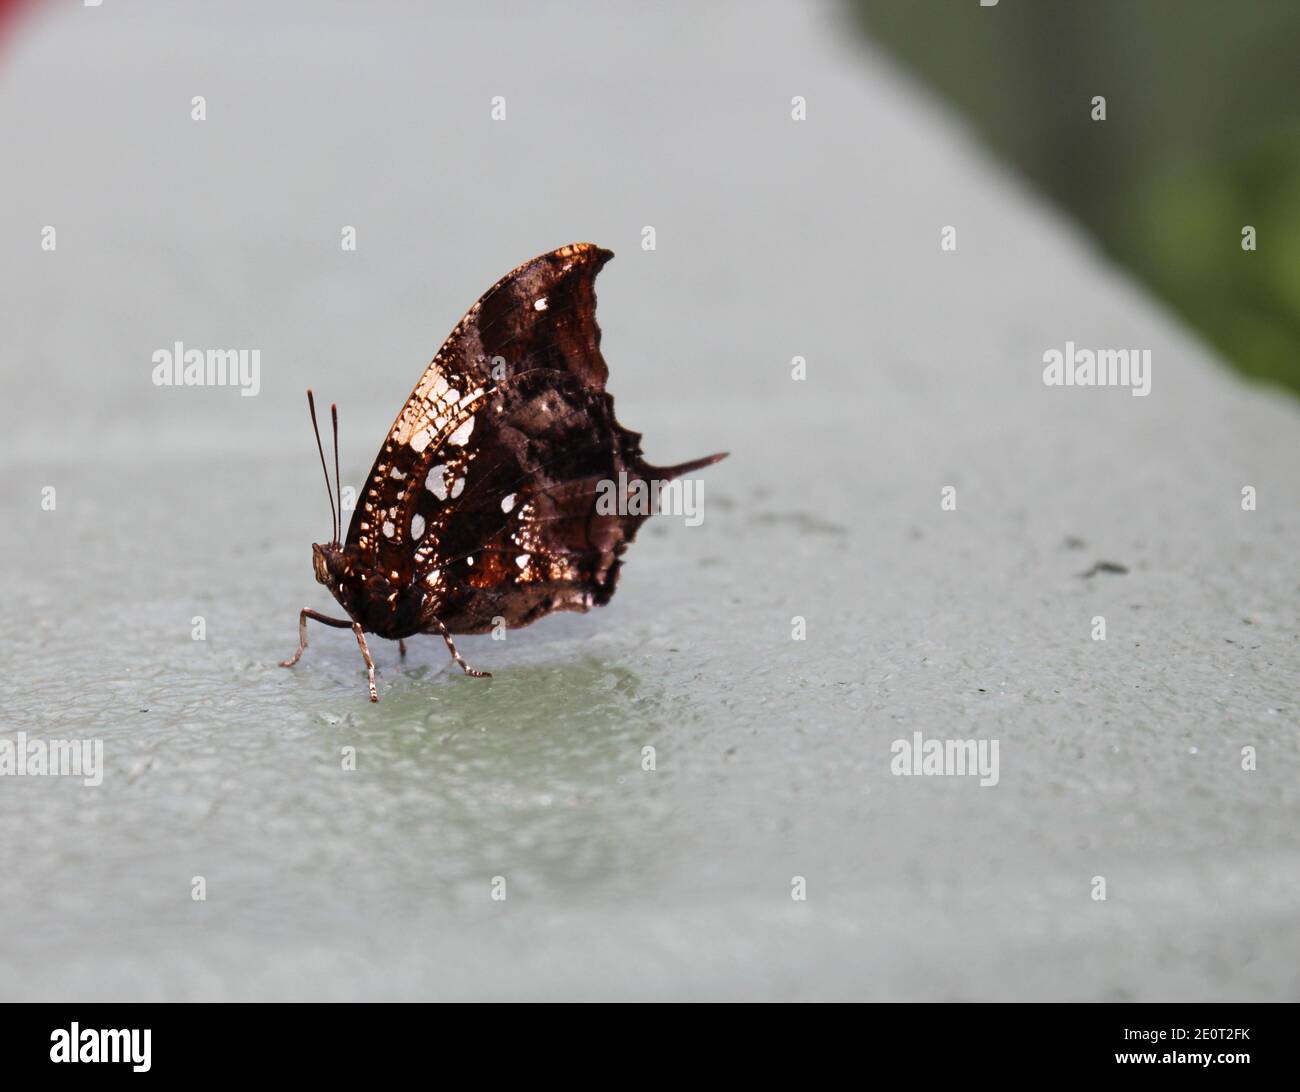 Nahaufnahme, Seitenansicht eines Hypna clytemnestra Schmetterlings, auch bekannt als der Jazzy Leafwing, Marmorbeine oder Silber Nieten Leafwing, sitzt auf einem cem Stockfoto